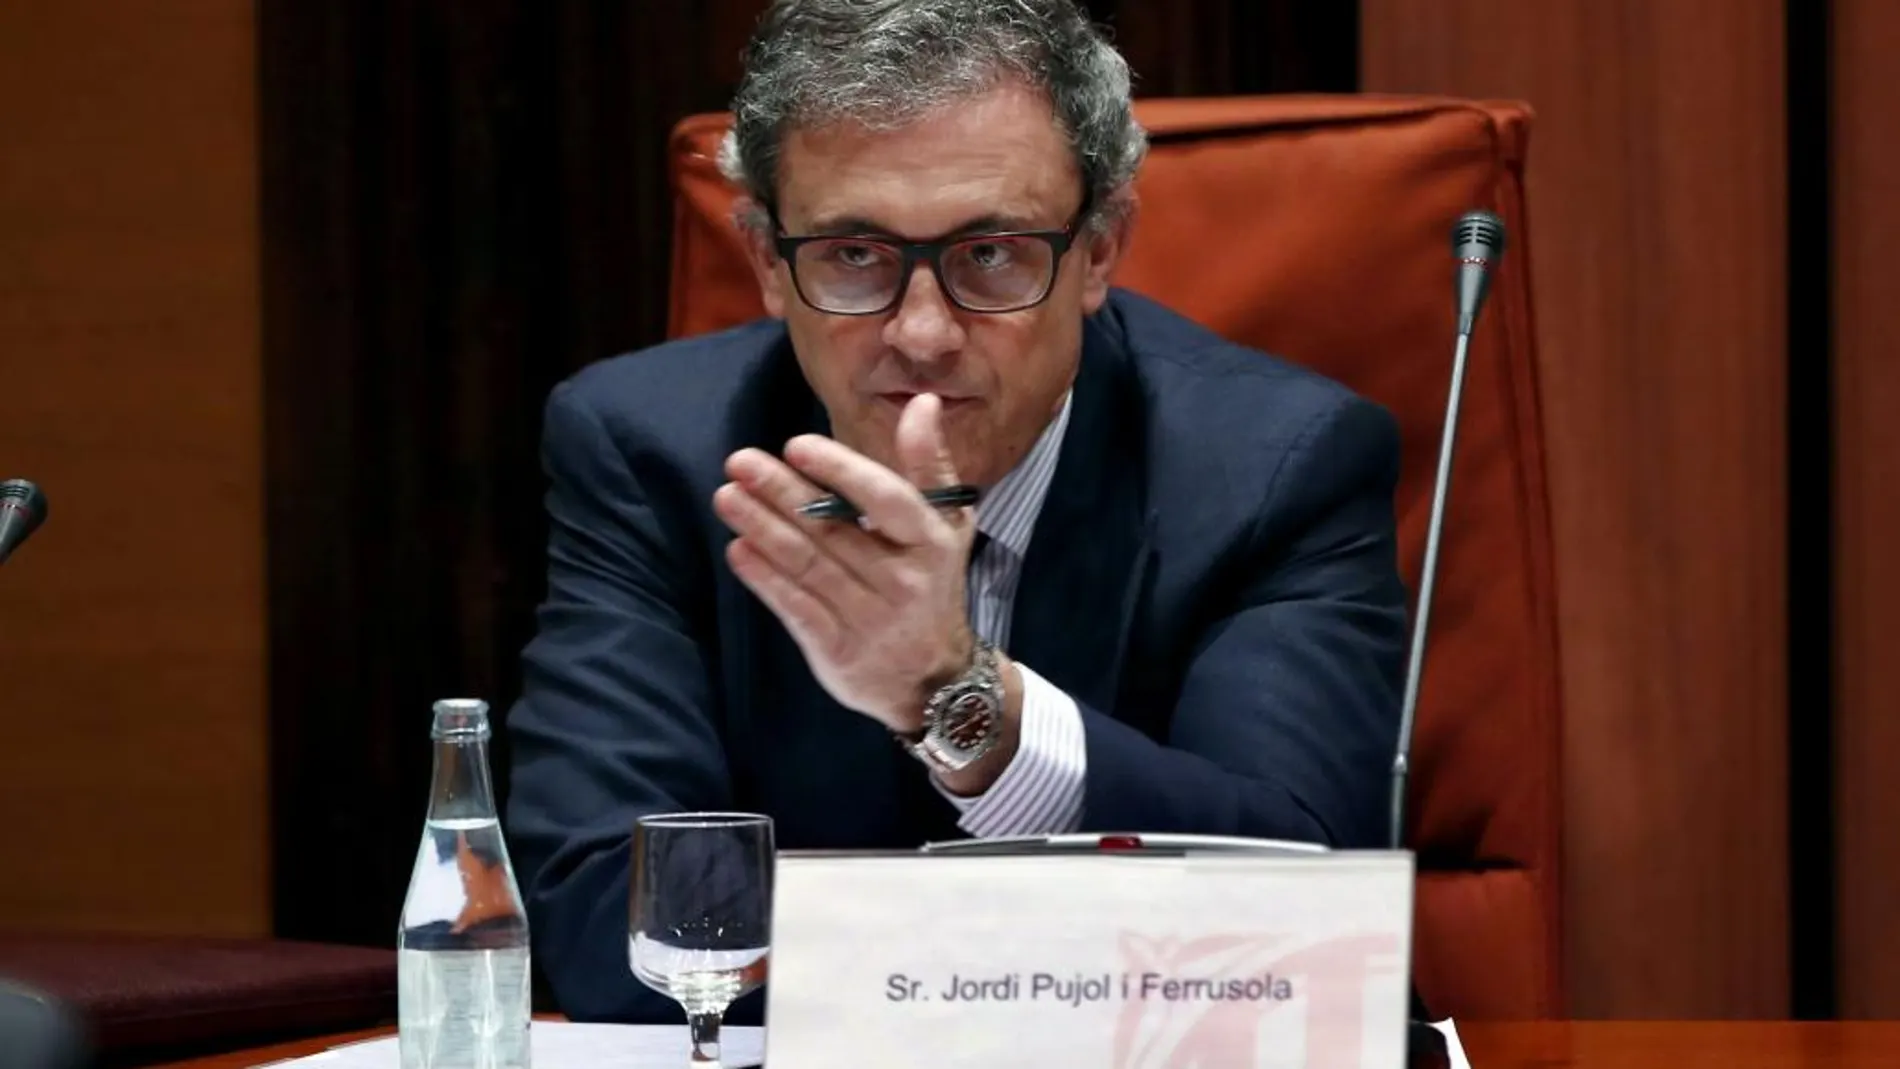 Jordi Pujol Ferrusola, hijo mayor del expresidente de la Generalitat Jordi Pujol, durante su comparecencia